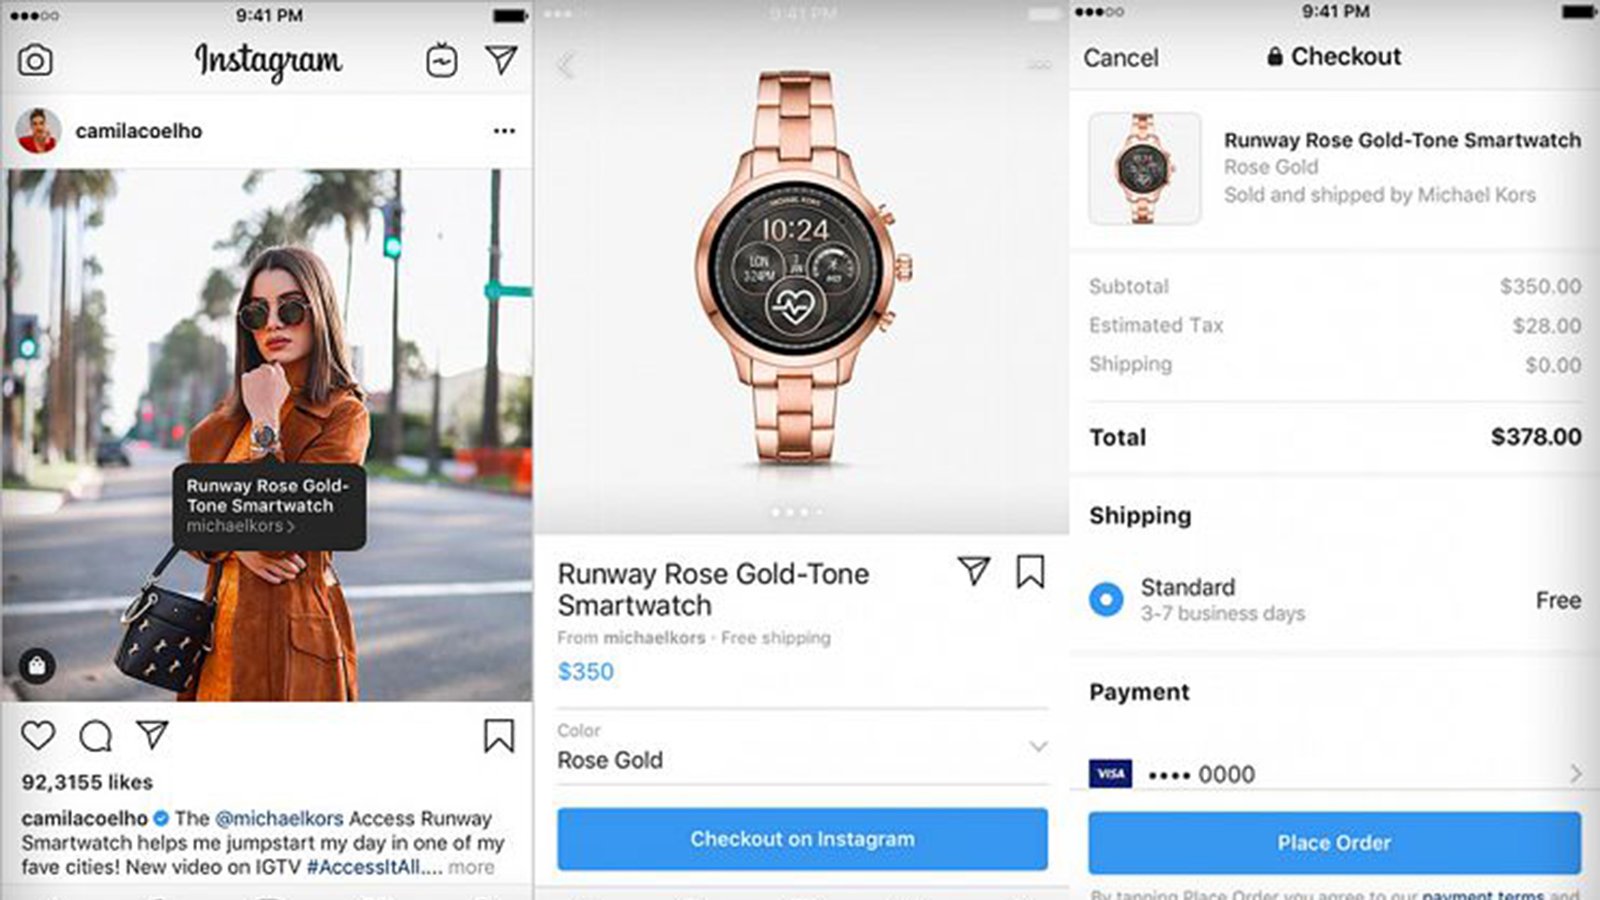 Influencere kan nå selge produkter direkte i sine Instagram-innlegg